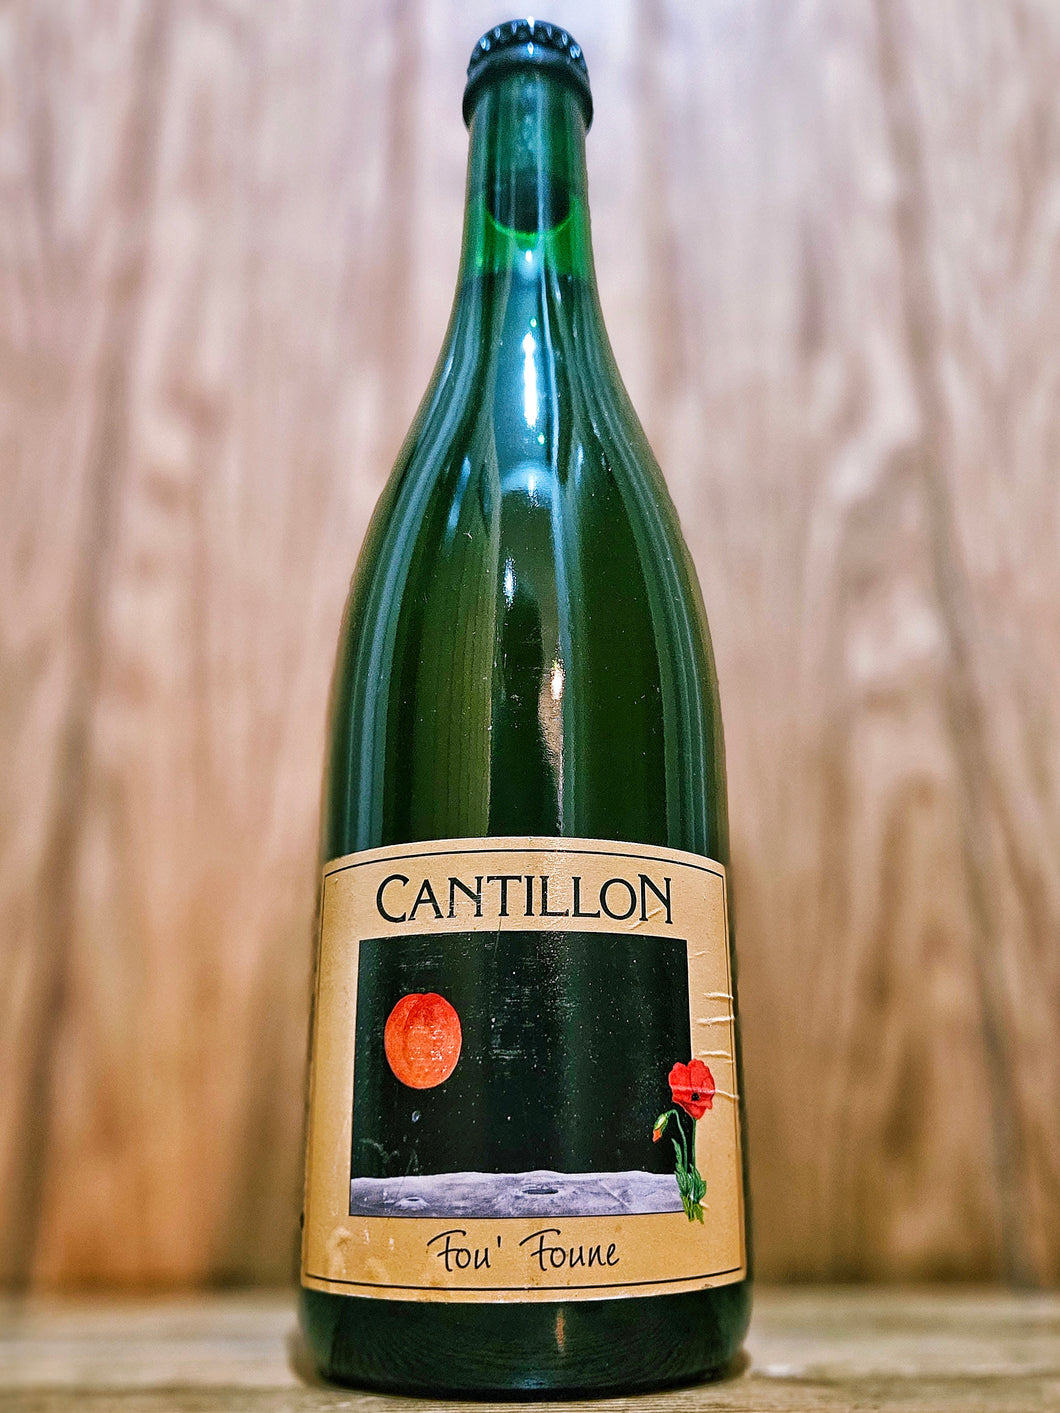 Cantillon - Fou Foune